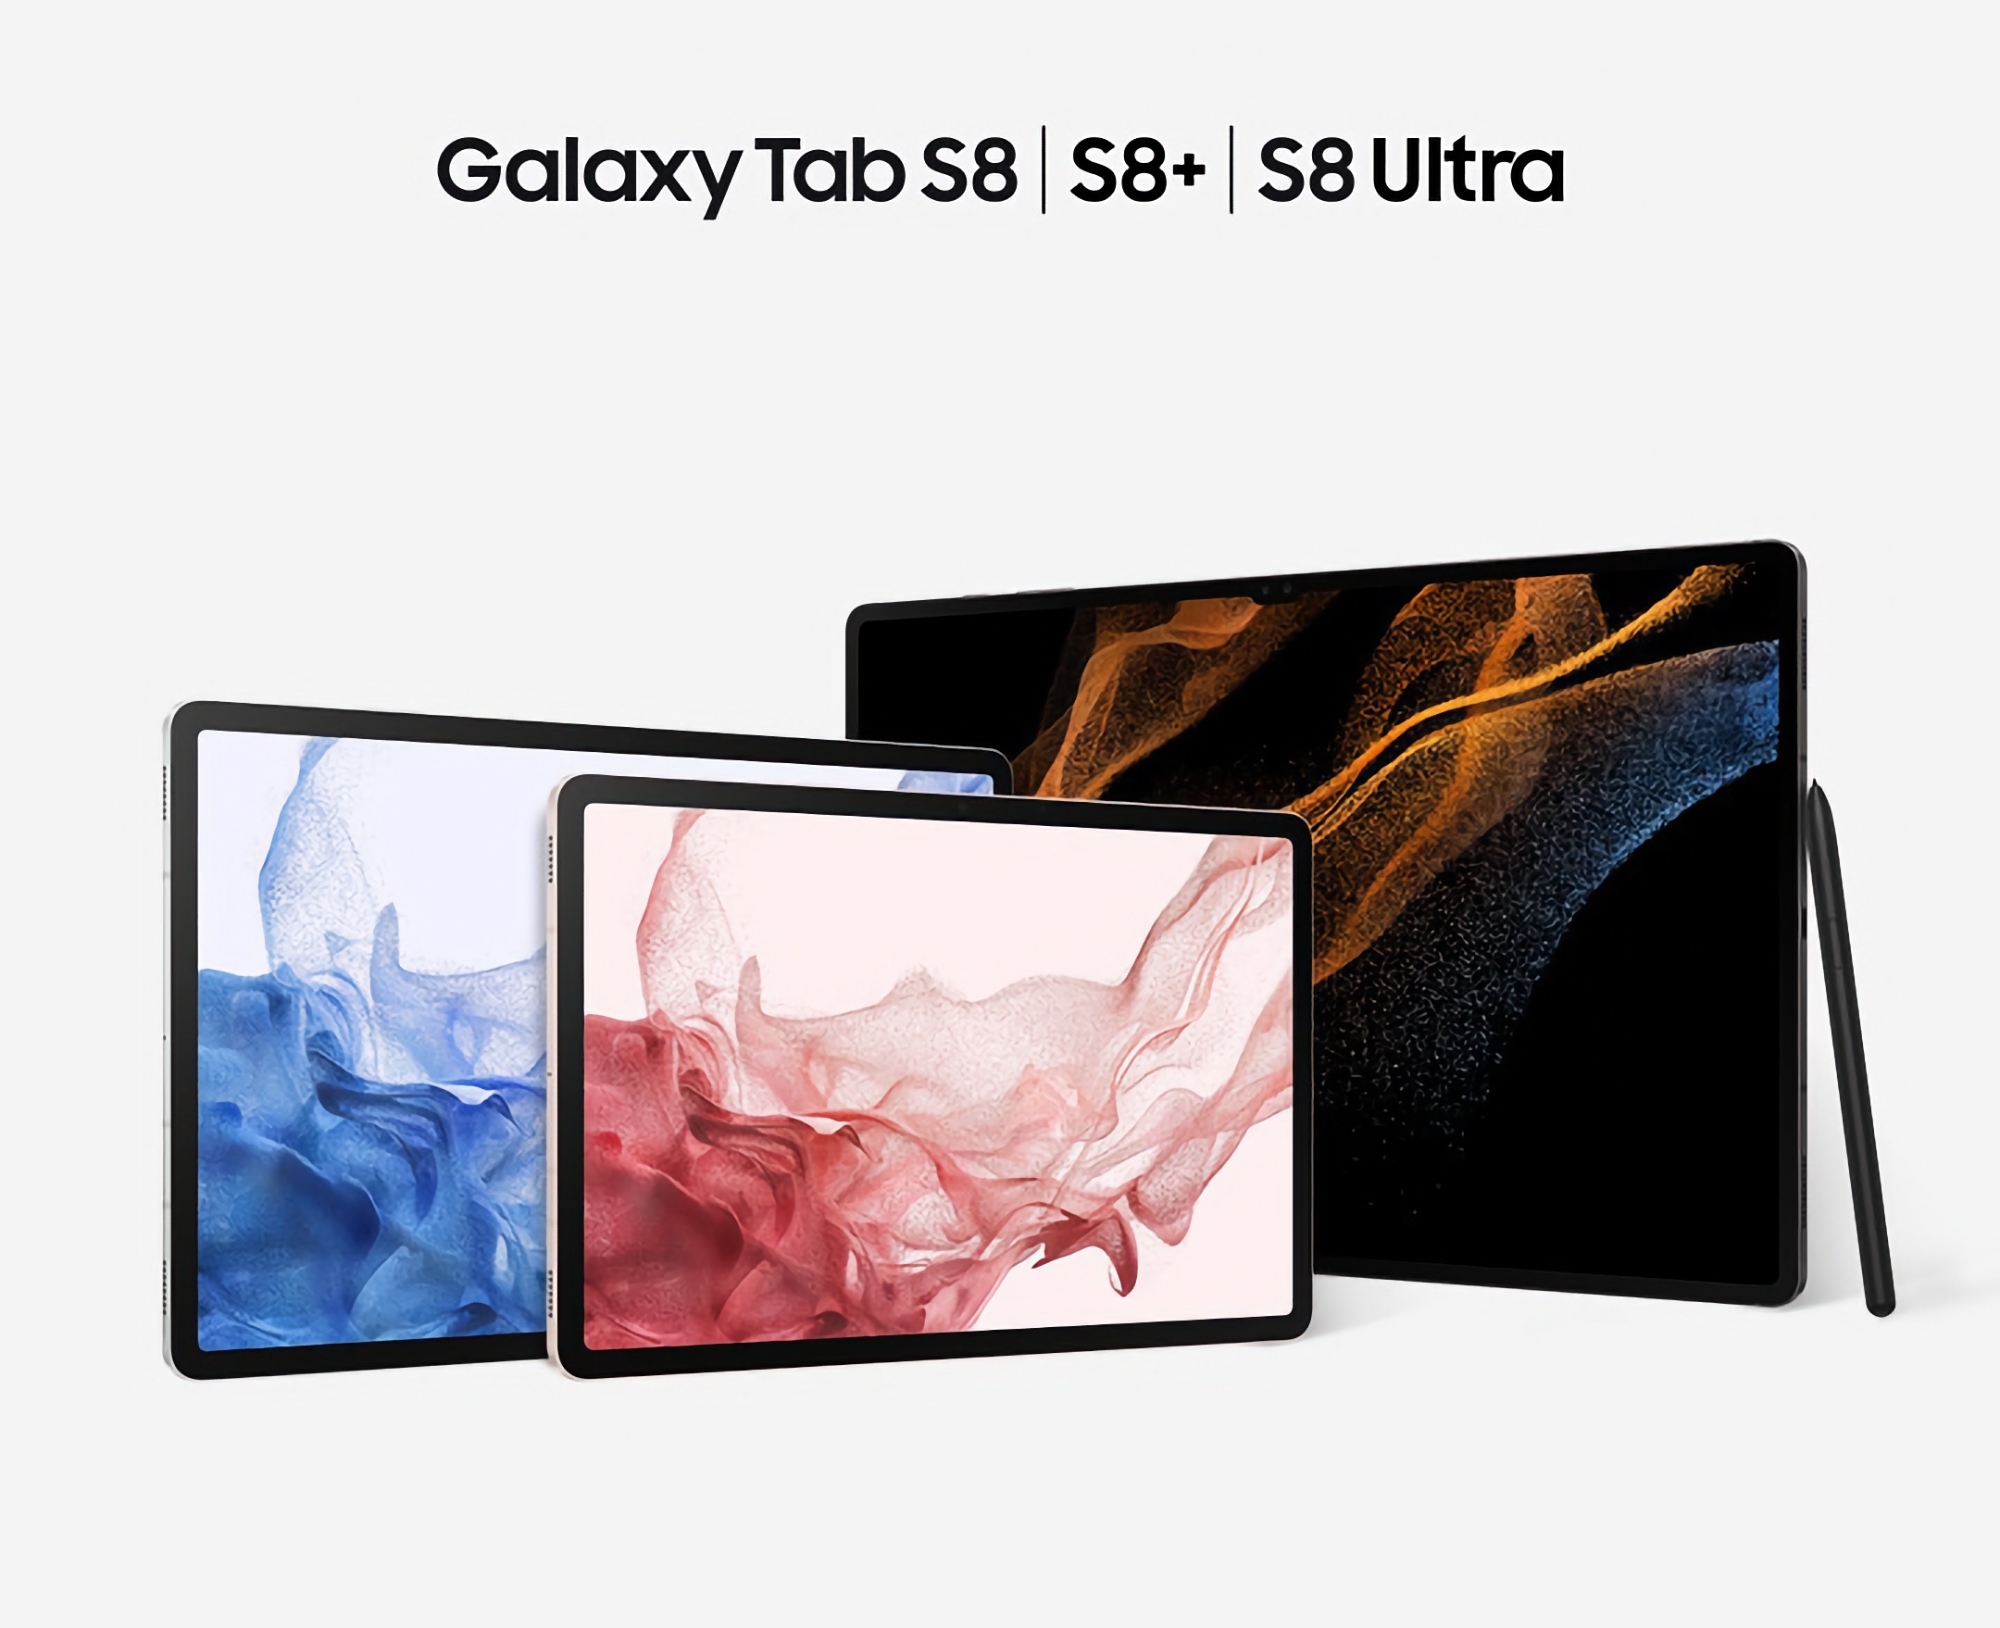 Samsung har udgivet en opdatering til Galaxy Tab S8, Galaxy Tab S8+ og Galaxy Tab S8 Ultra: Hvad er nyt?